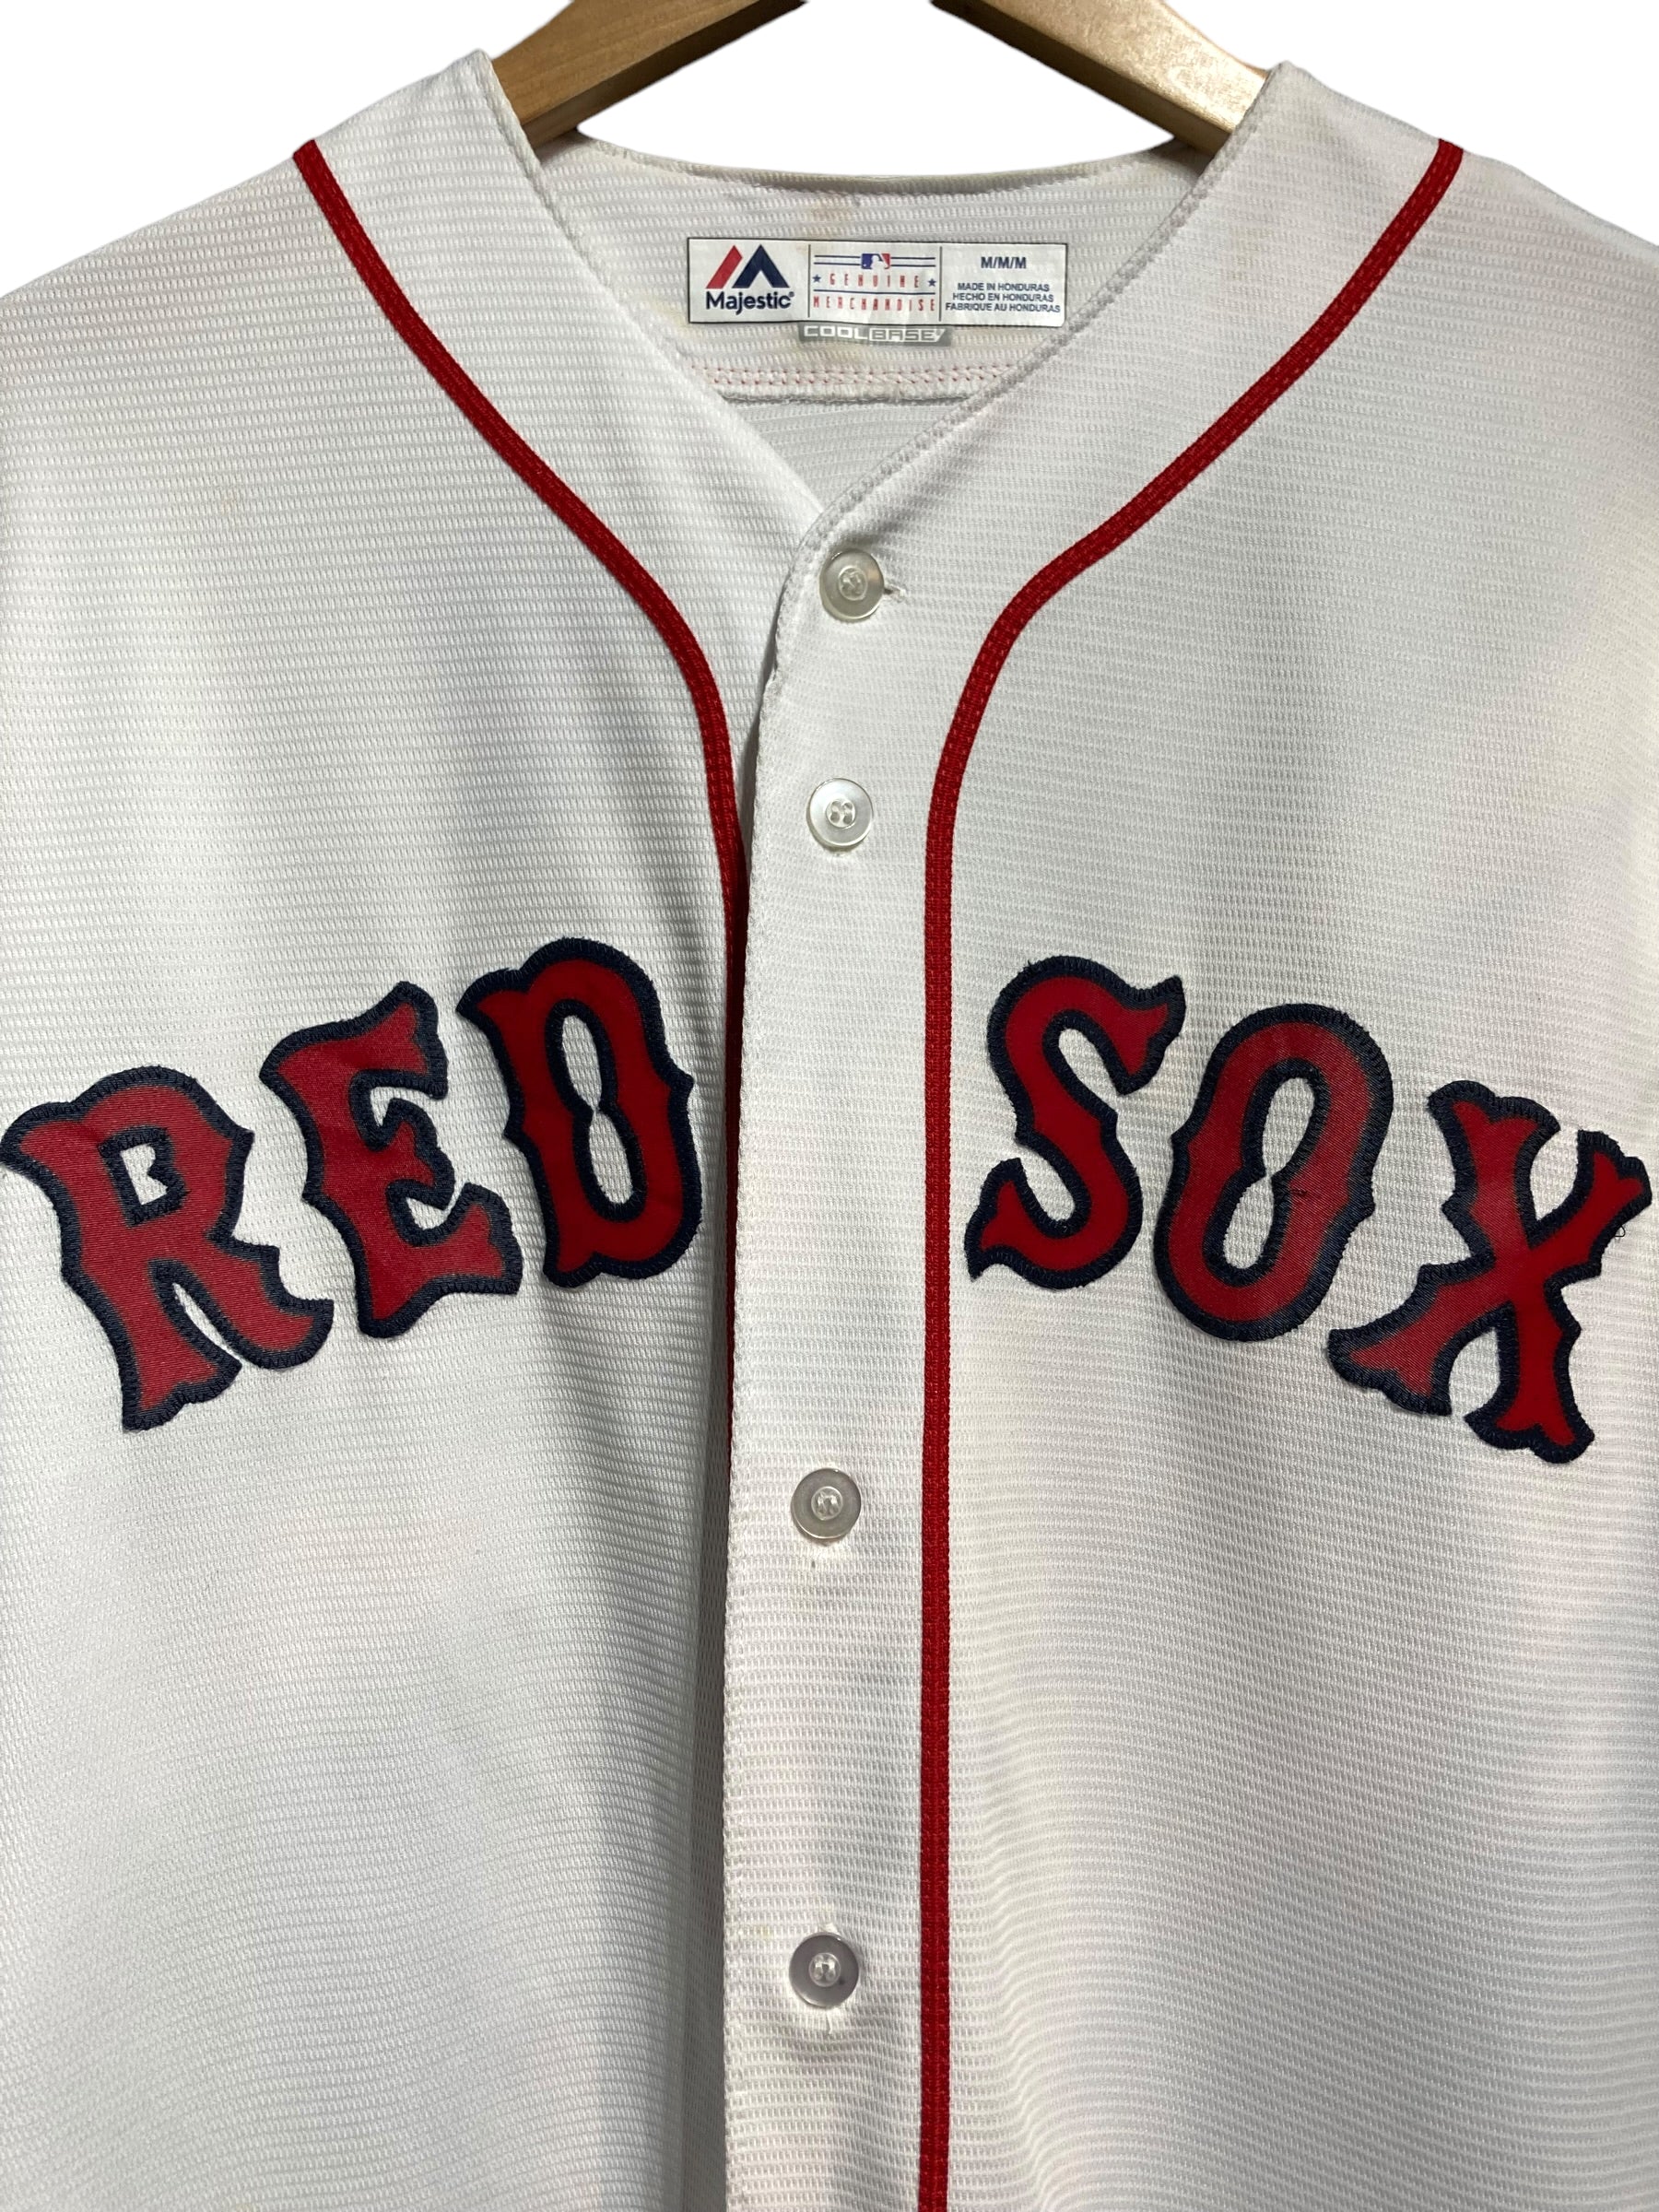 ポリエステル100%色マジェスティック Majestic MLB BOSTON RED SOX ...